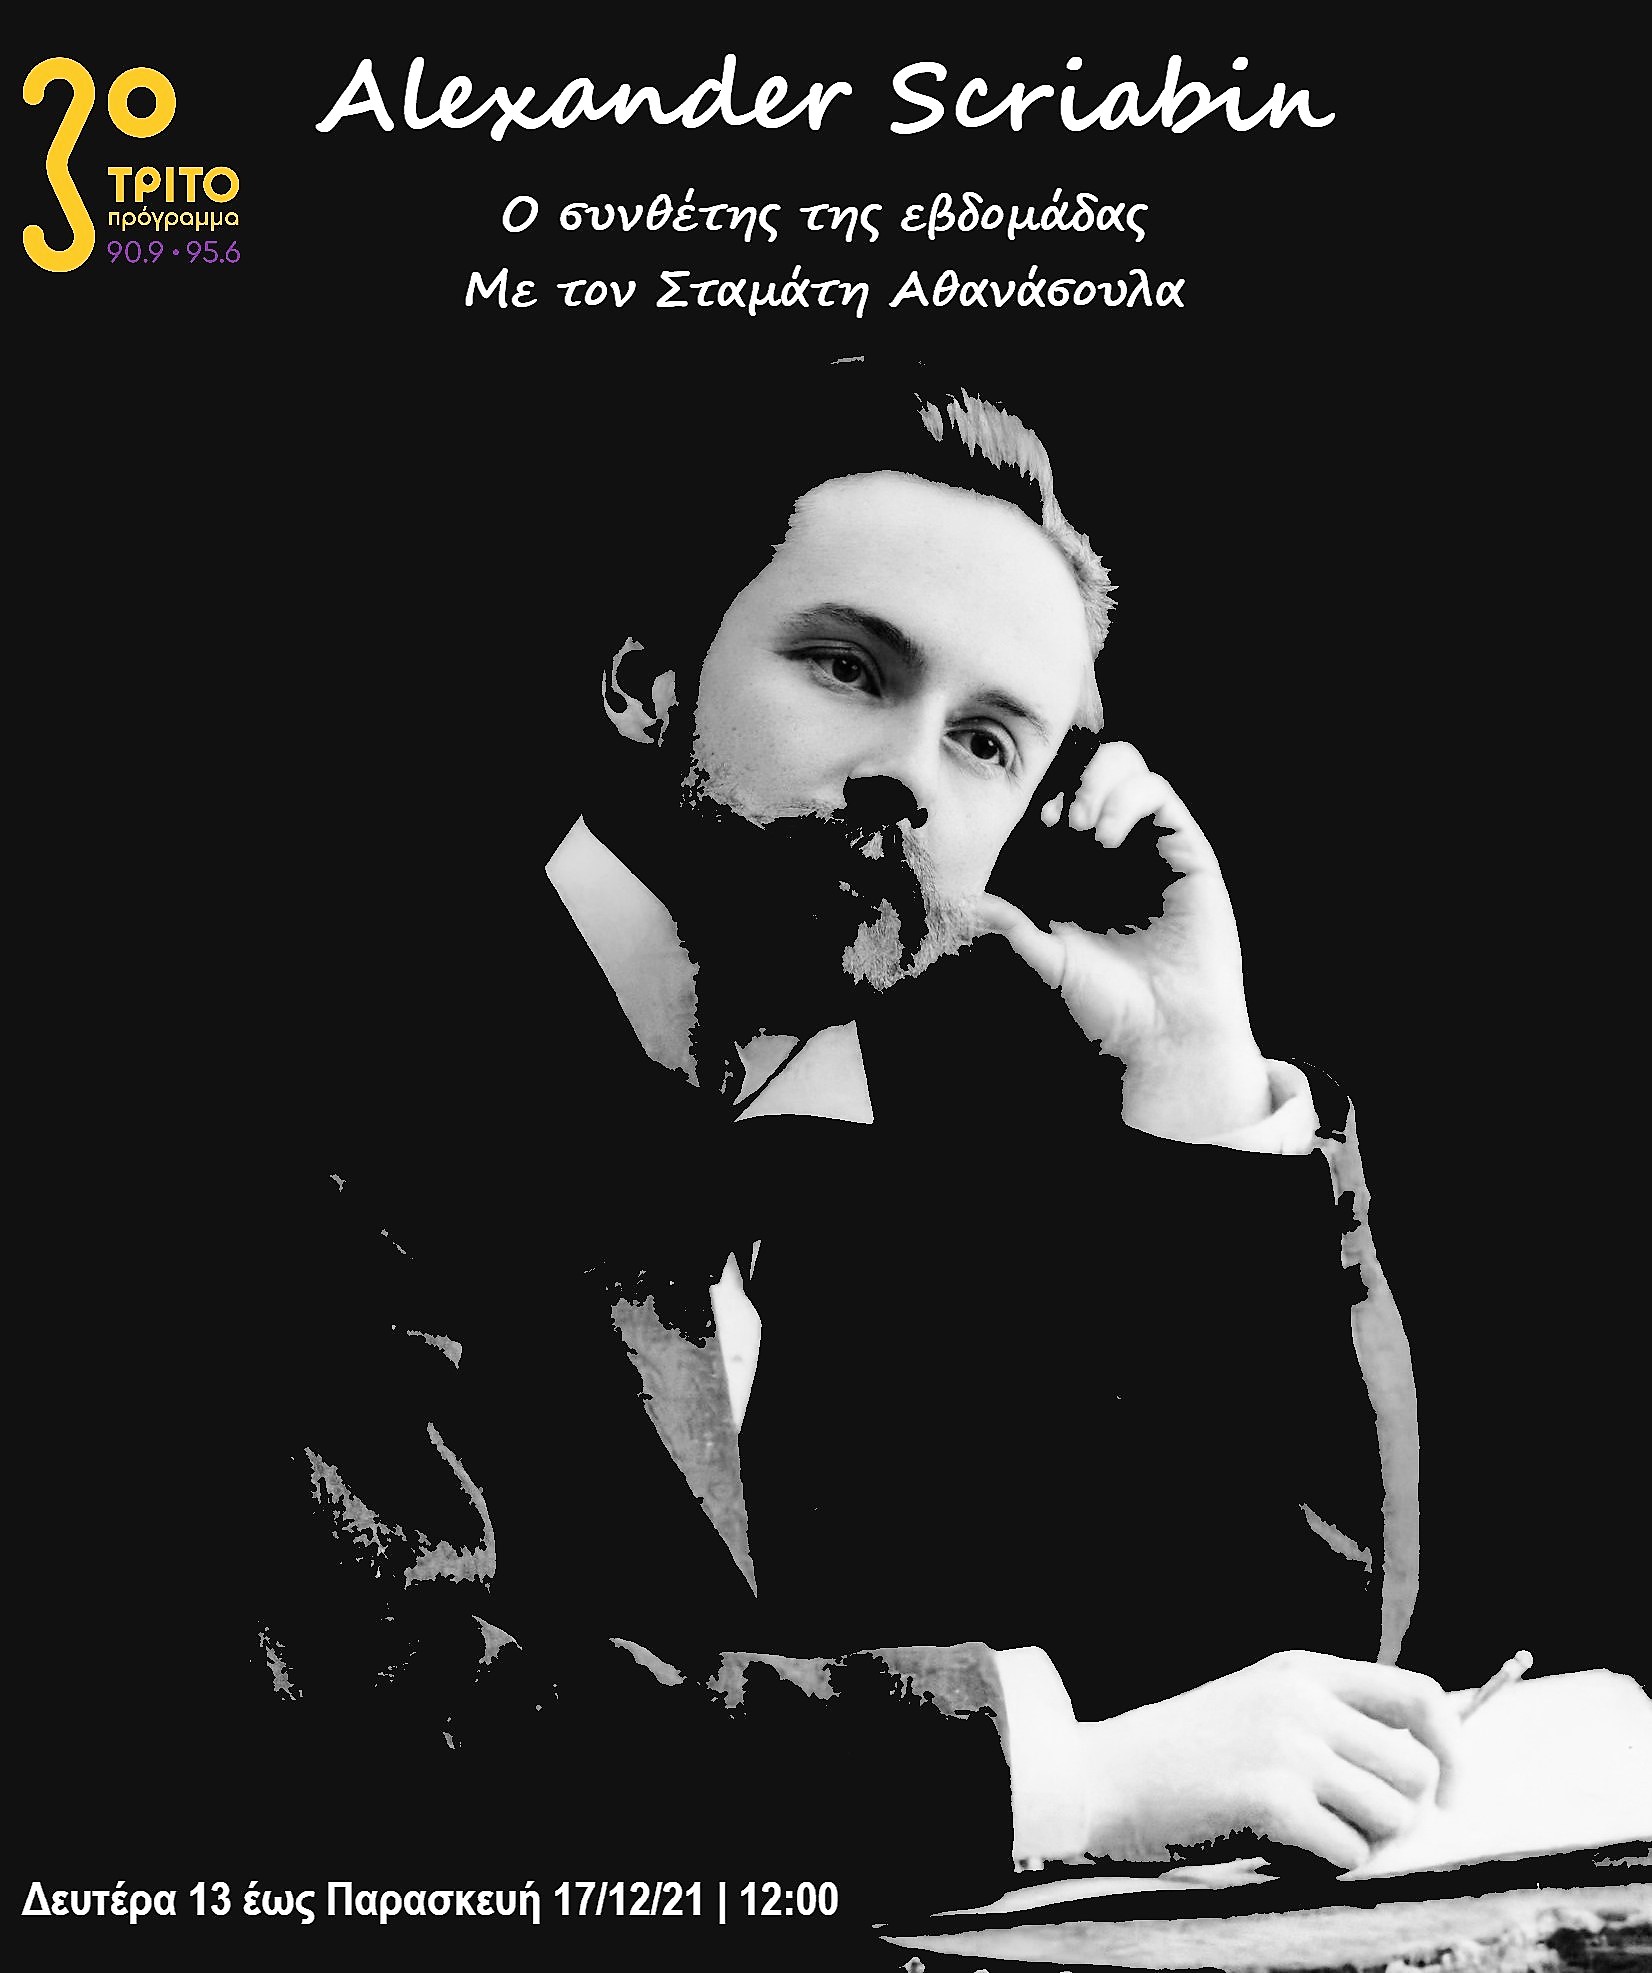 14Δεκ2021 Ο Συνθέτης της εβδομάδας -Εβδομάδα αφιερωμένη στον Alexander Scriabin (1871-1915). Έρευνα-Παραγωγή-Παρουσίαση: Σταμάτης Αθανάσουλας  2η εκπομπή (Audio)